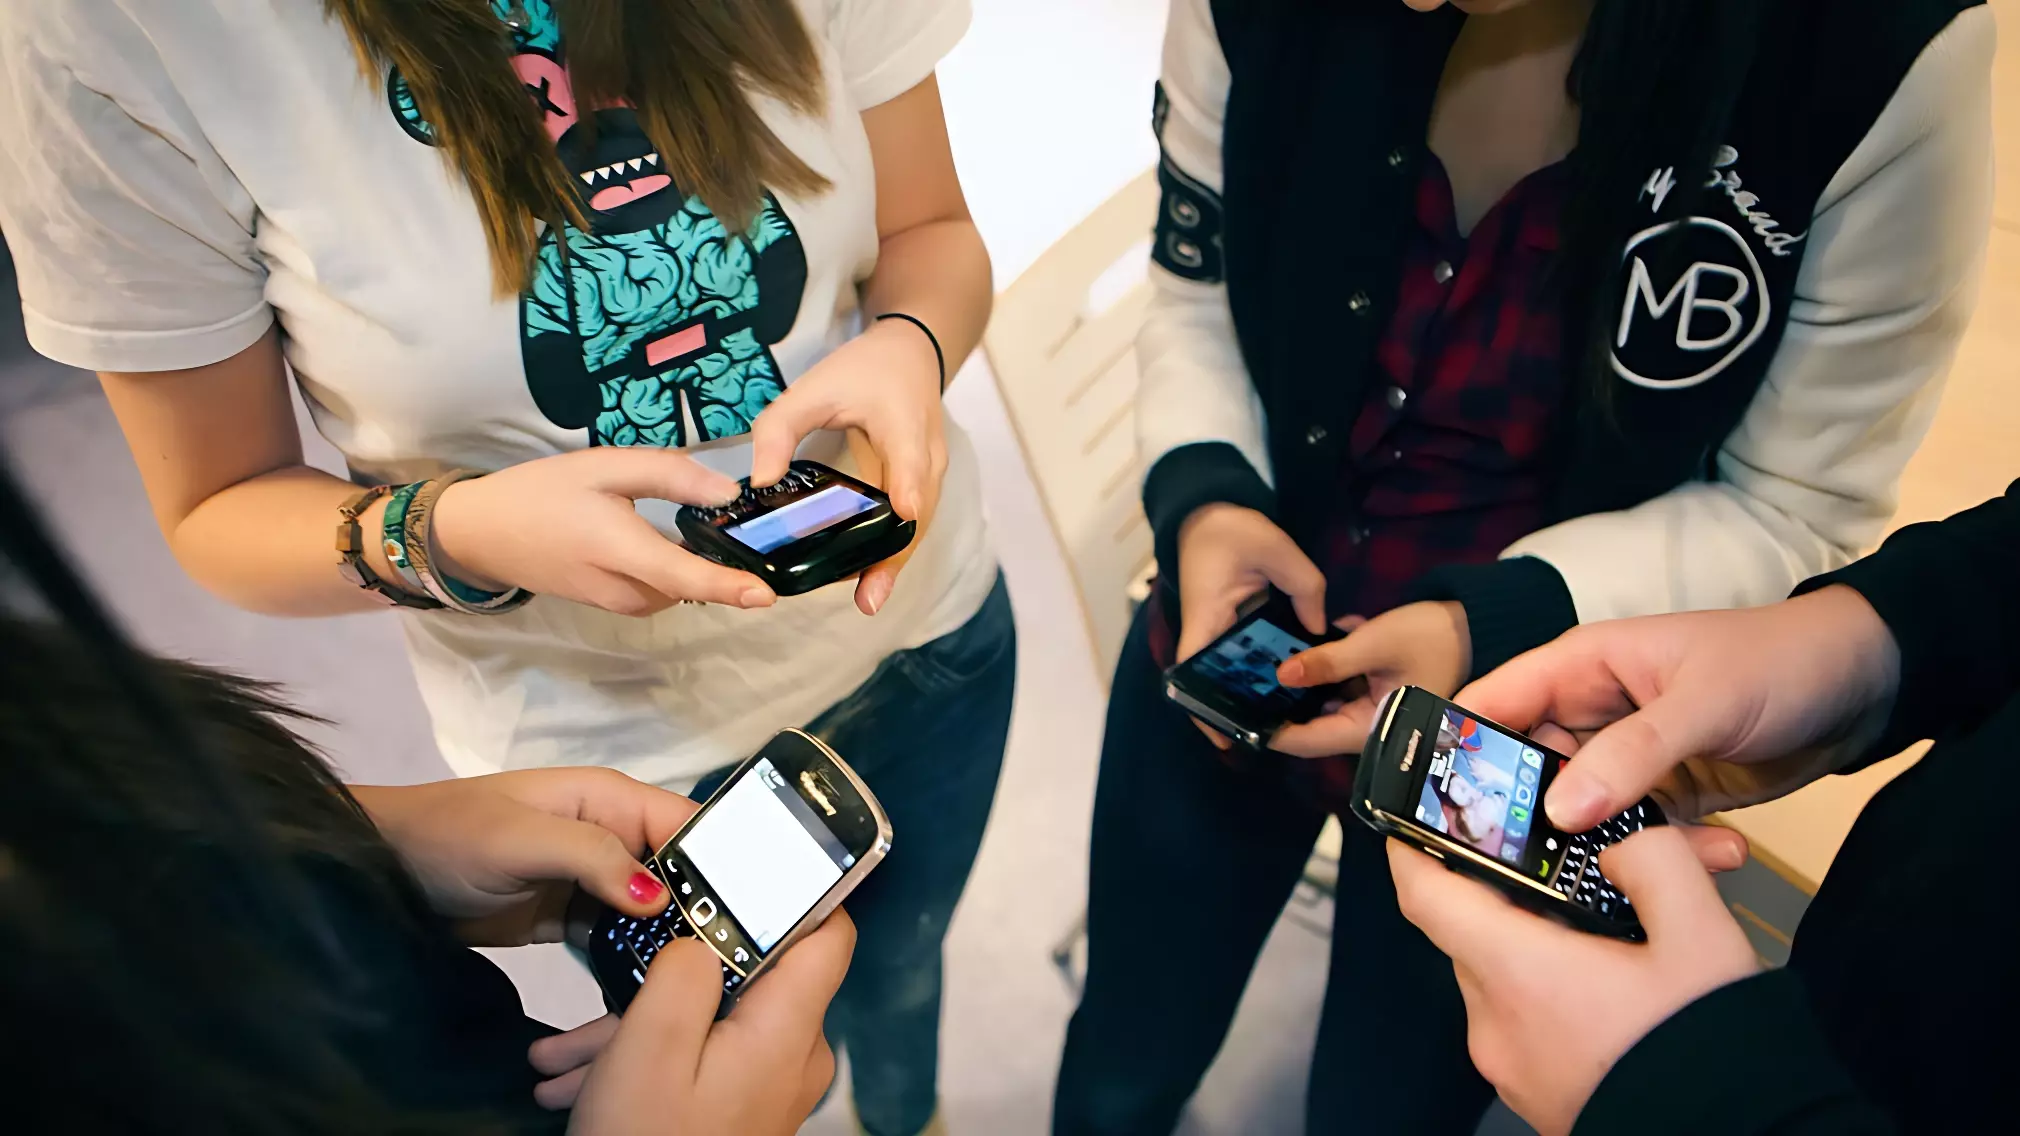 Госдума запретила в школах мобильные телефоны: как теперь быть ученикам и учителям?